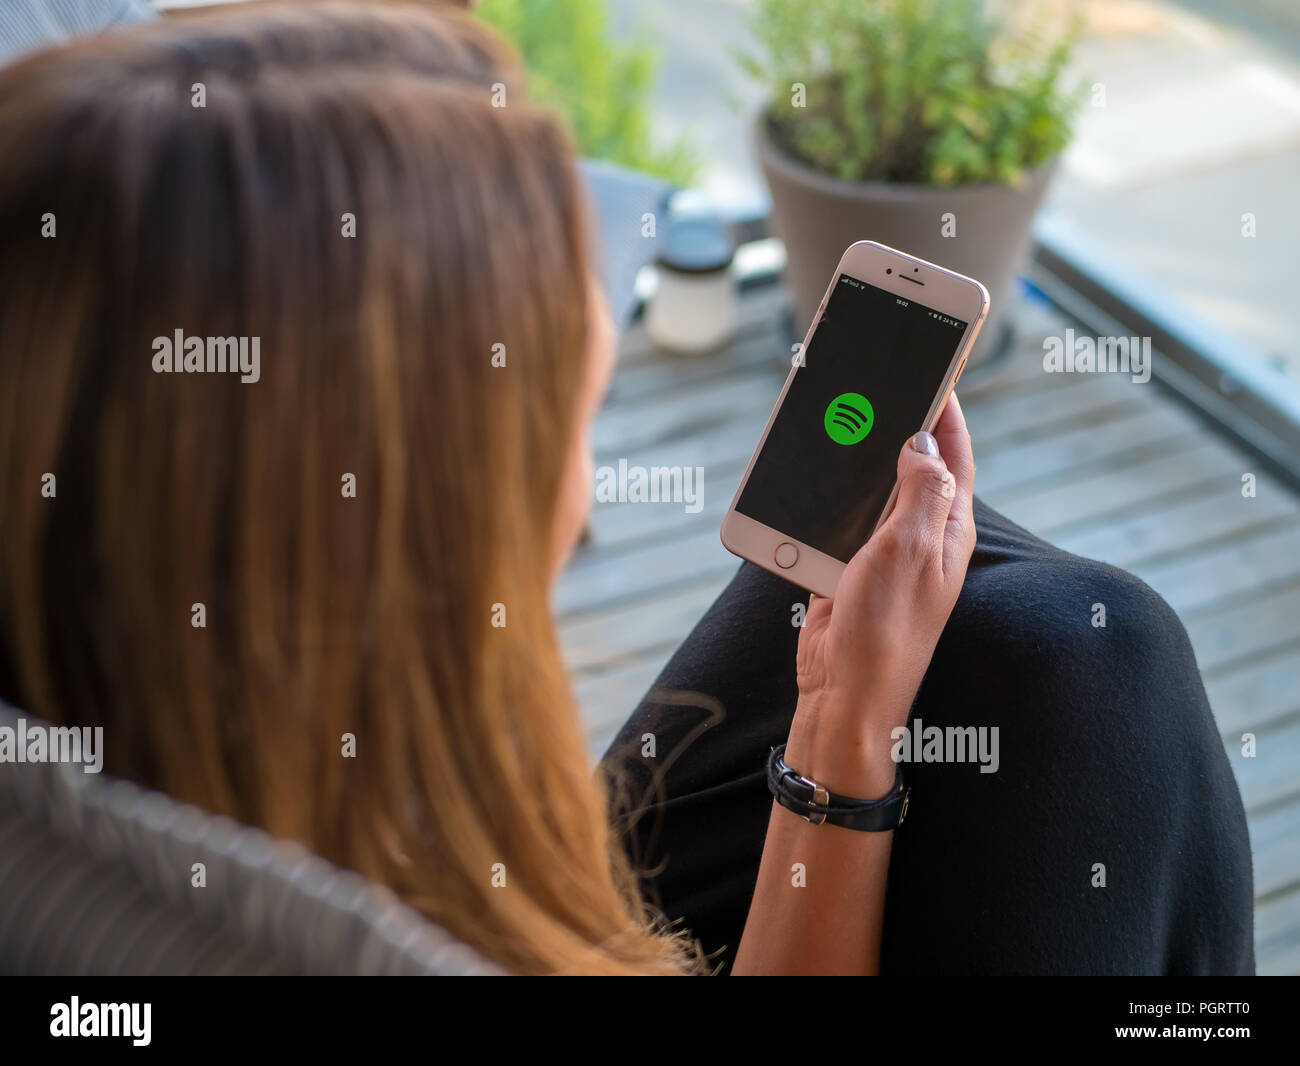 Stockholm, Schweden, 14. Juni 2018: Frauen, die ein Smartphone oder Handy mit Spotify Musik App laden. Ansicht von der Rückseite, selektive konzentrieren. Stockfoto